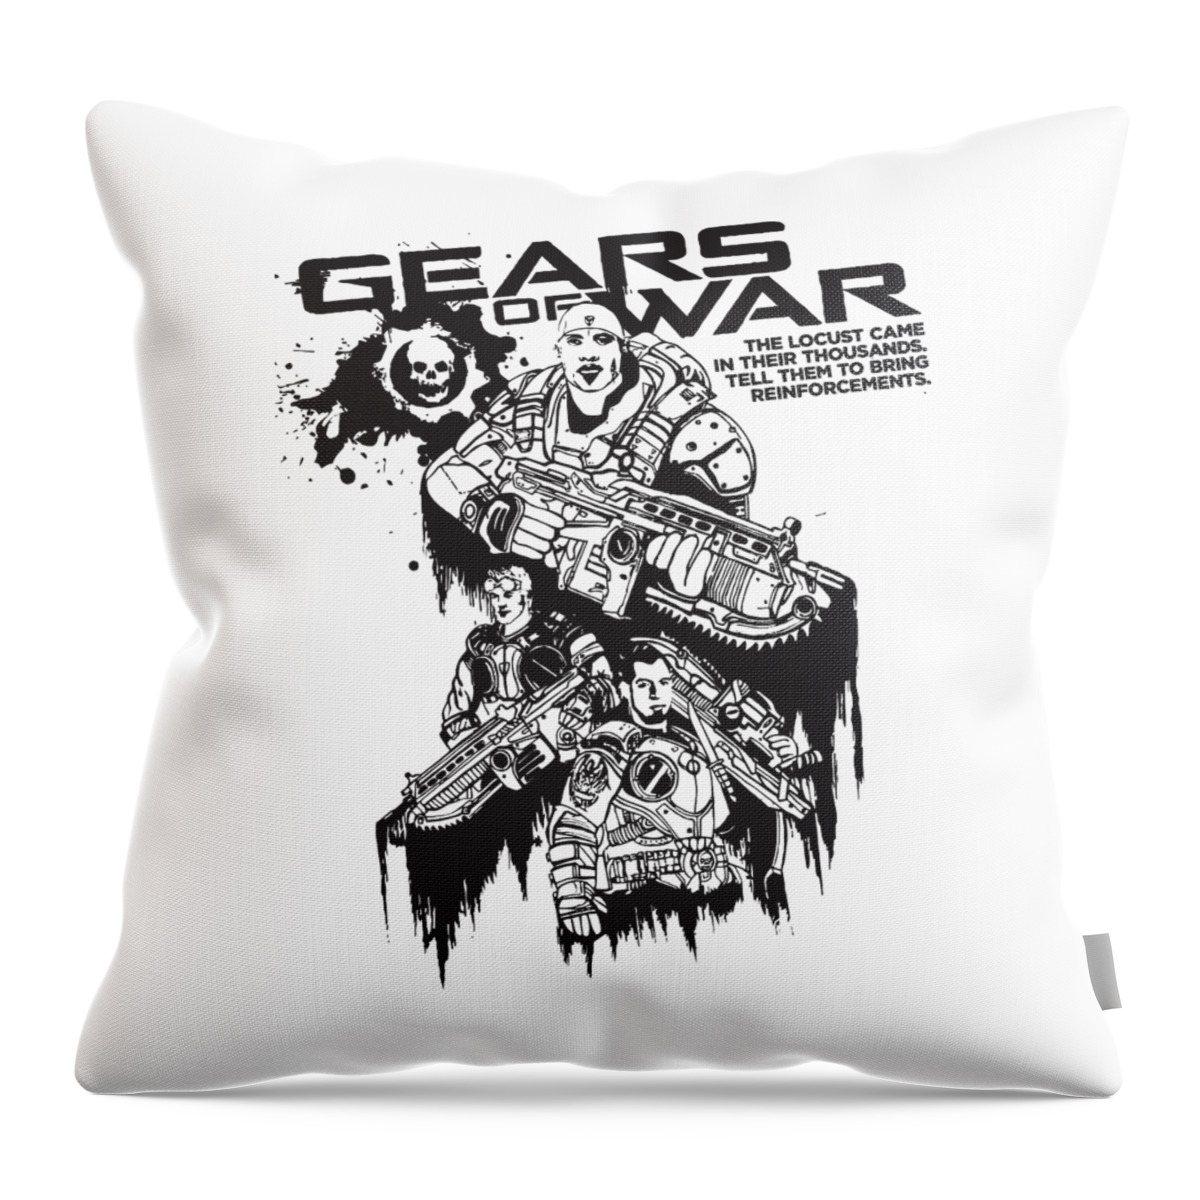 Gears Of War Throw Pillow featuring the digital art Gear of War by Joseph J Simms